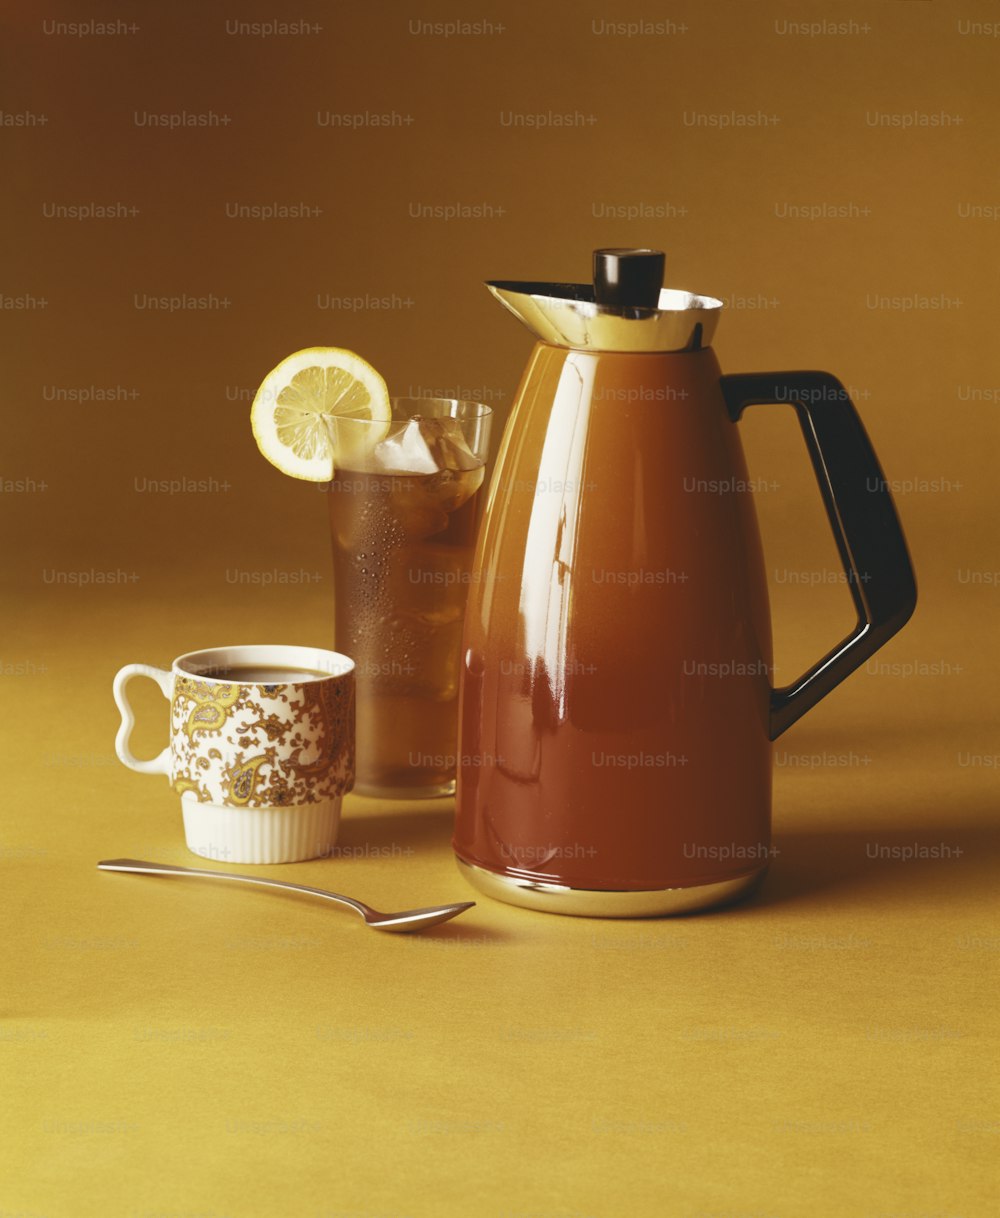 una jarra de té junto a una taza de té